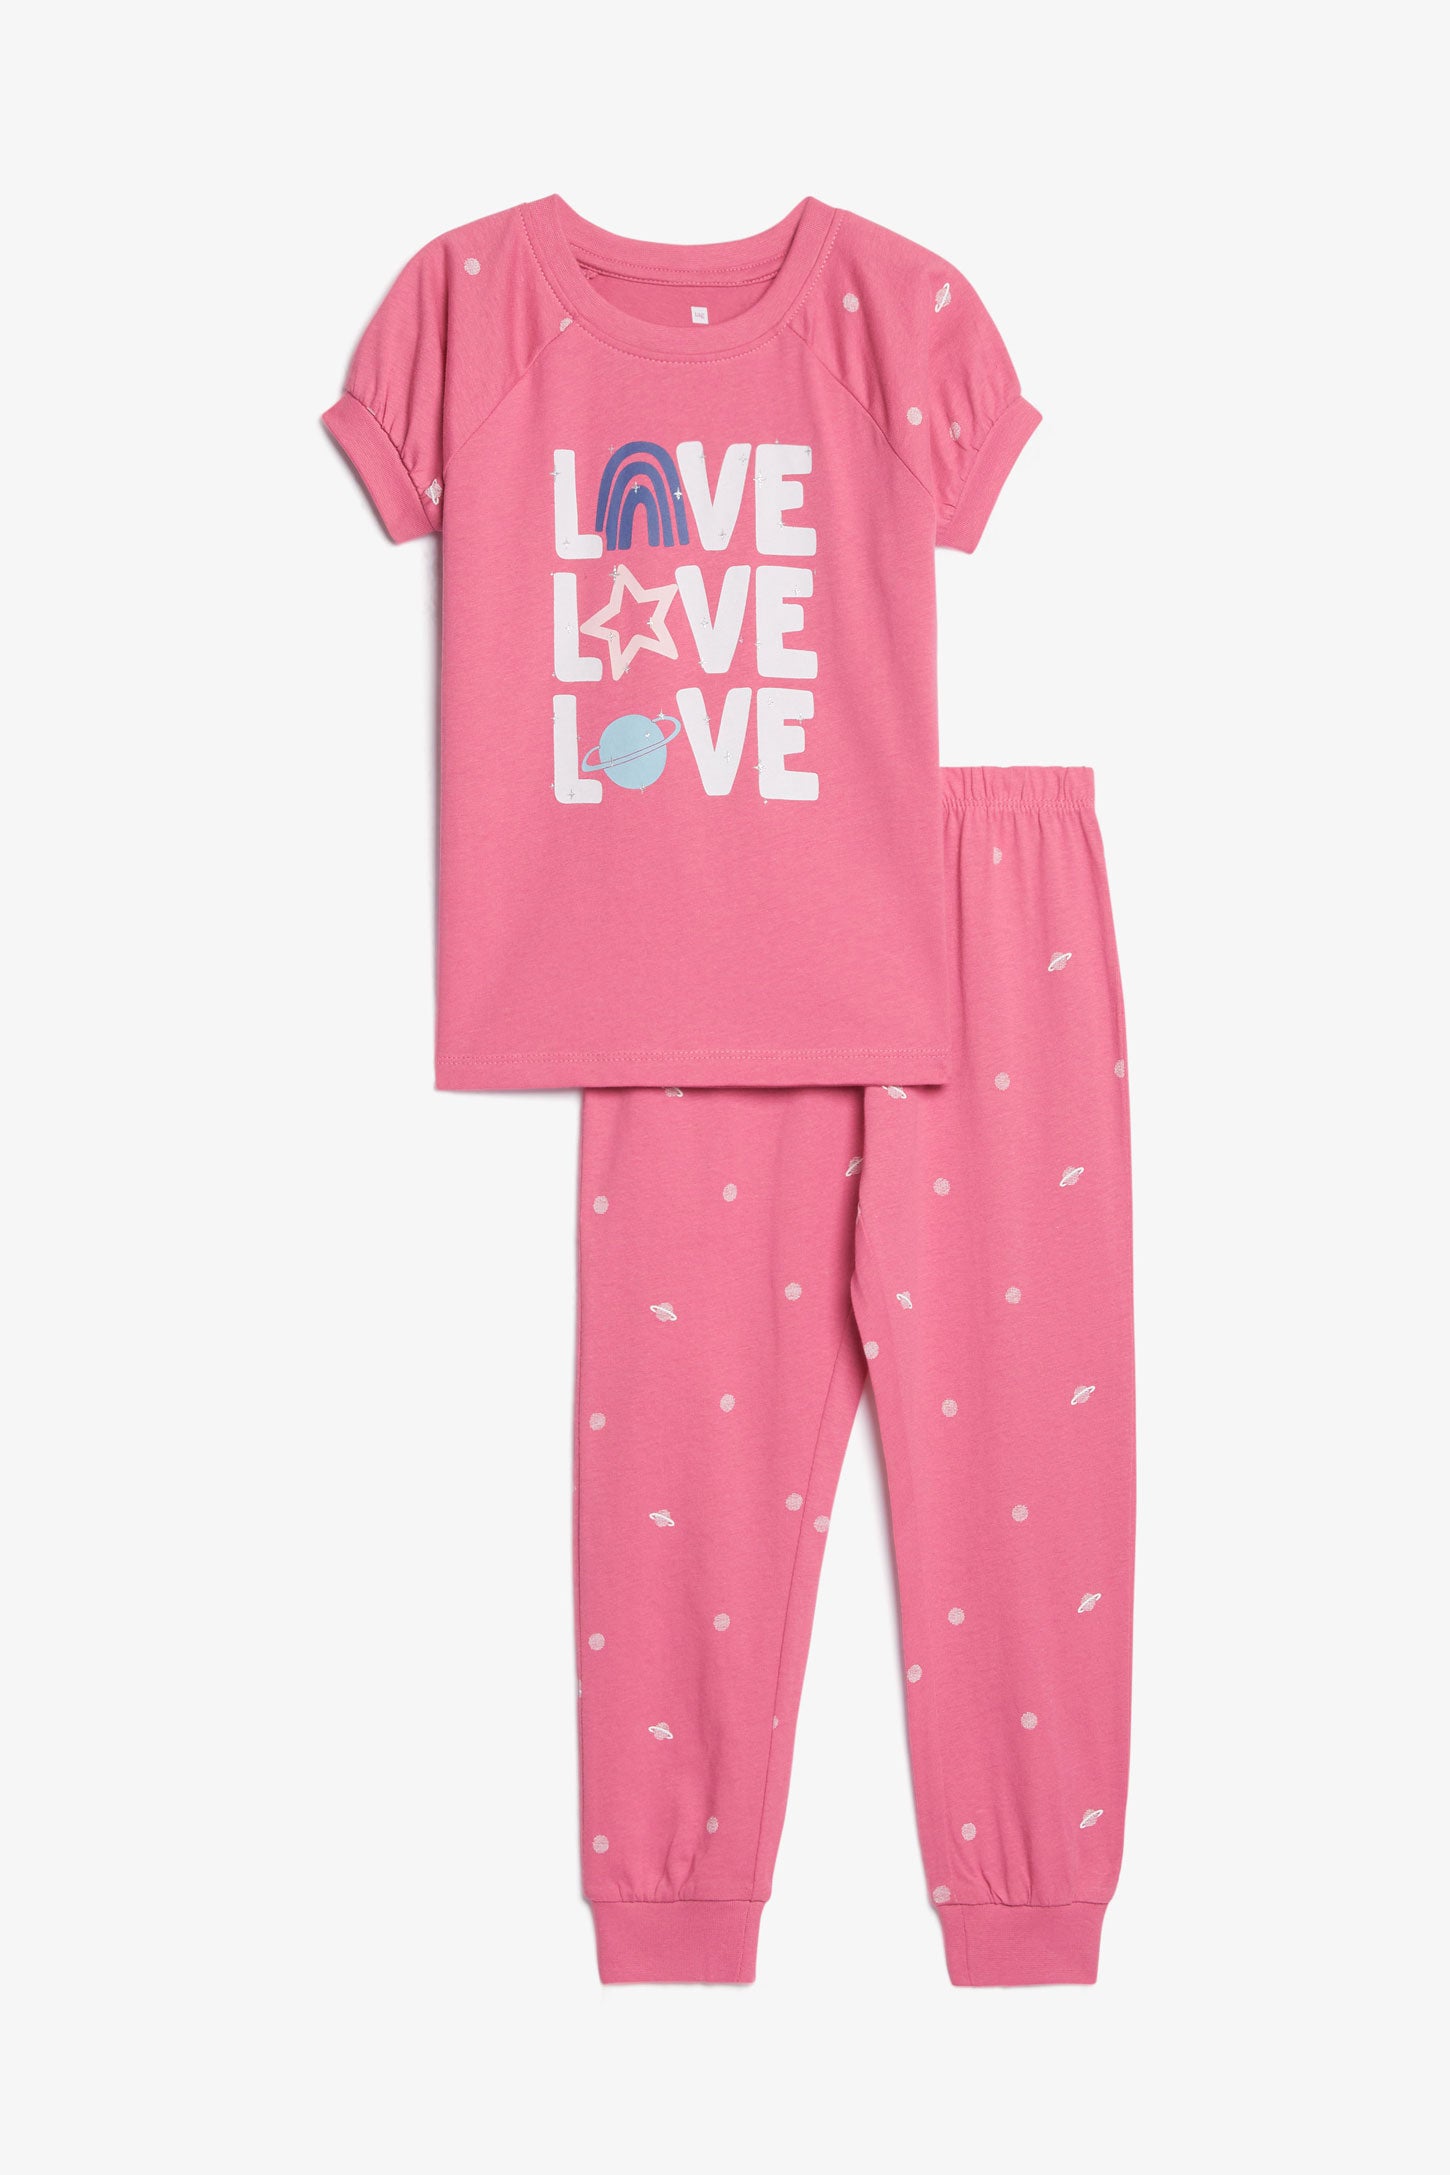 Pyjama 2-pièces en coton, 2/35$ - Enfant fille && ROSE FONCE